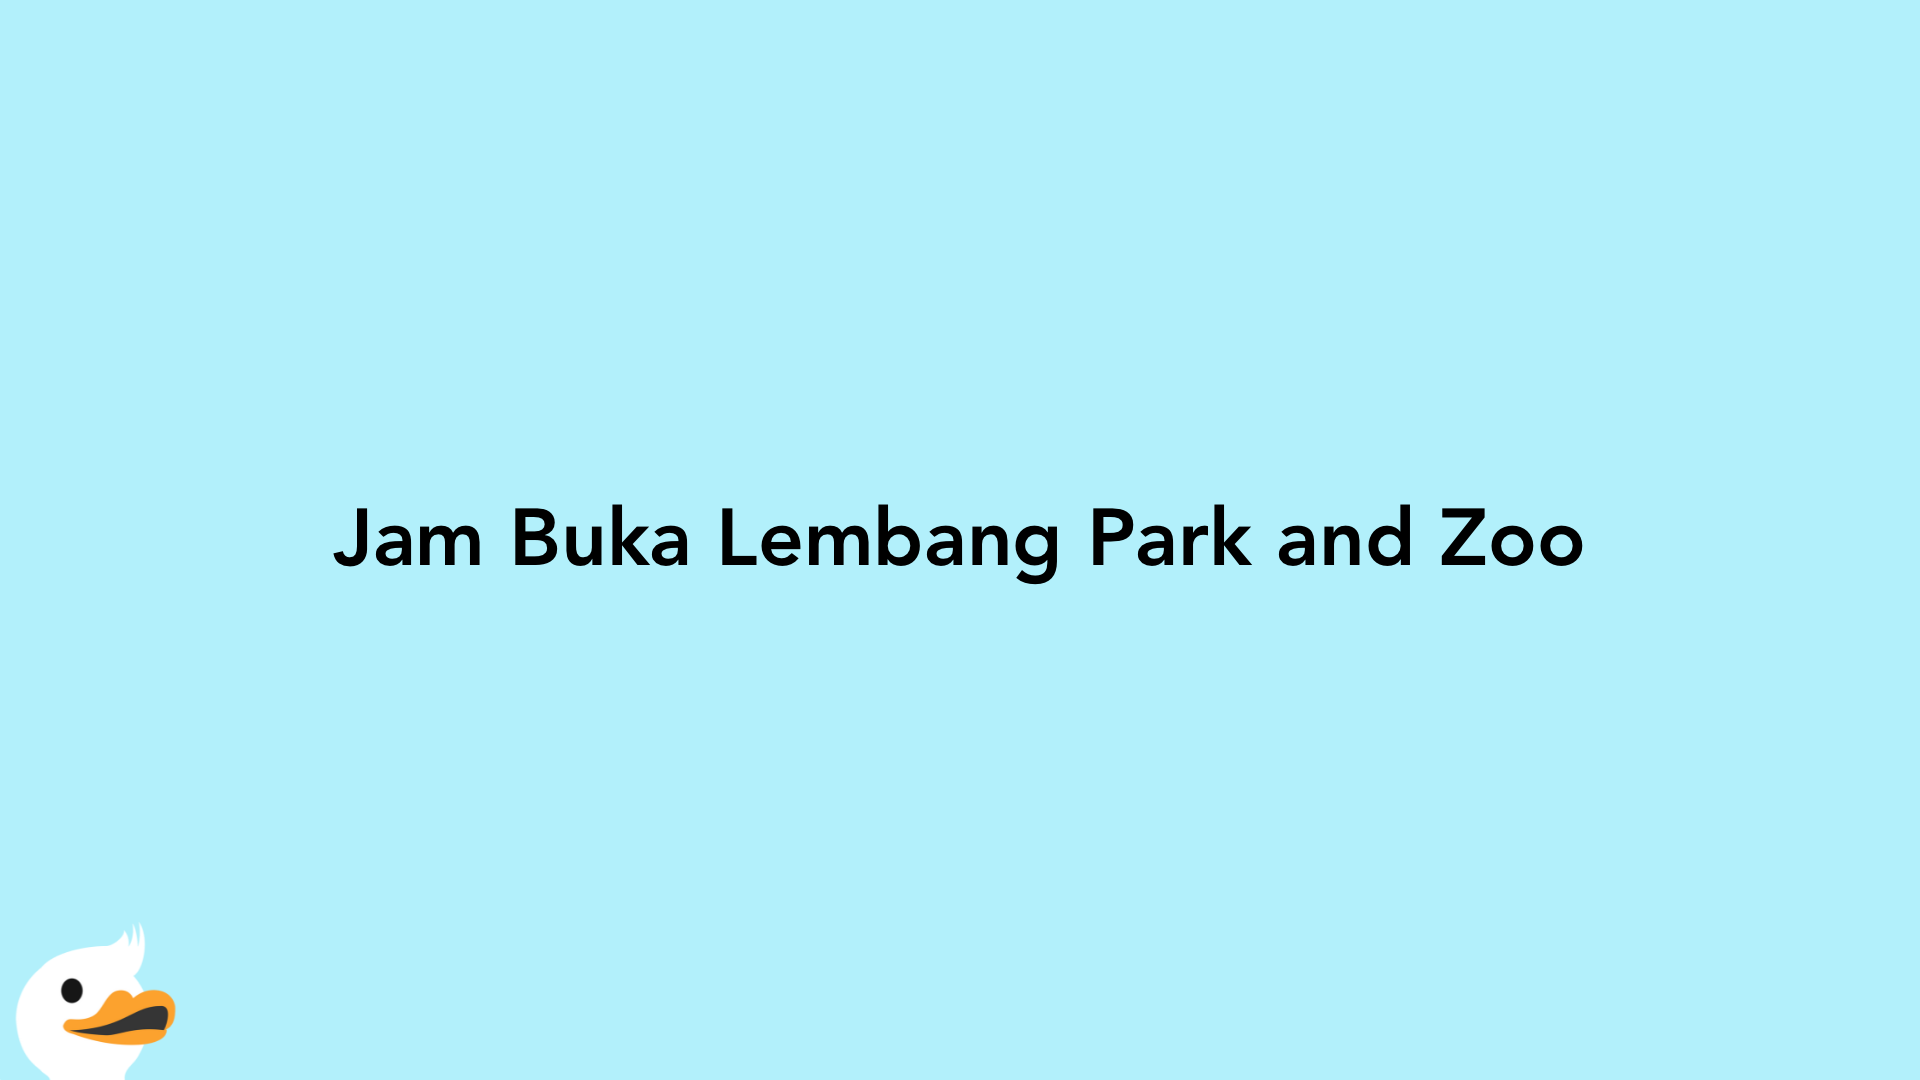 Jam Buka Lembang Park and Zoo